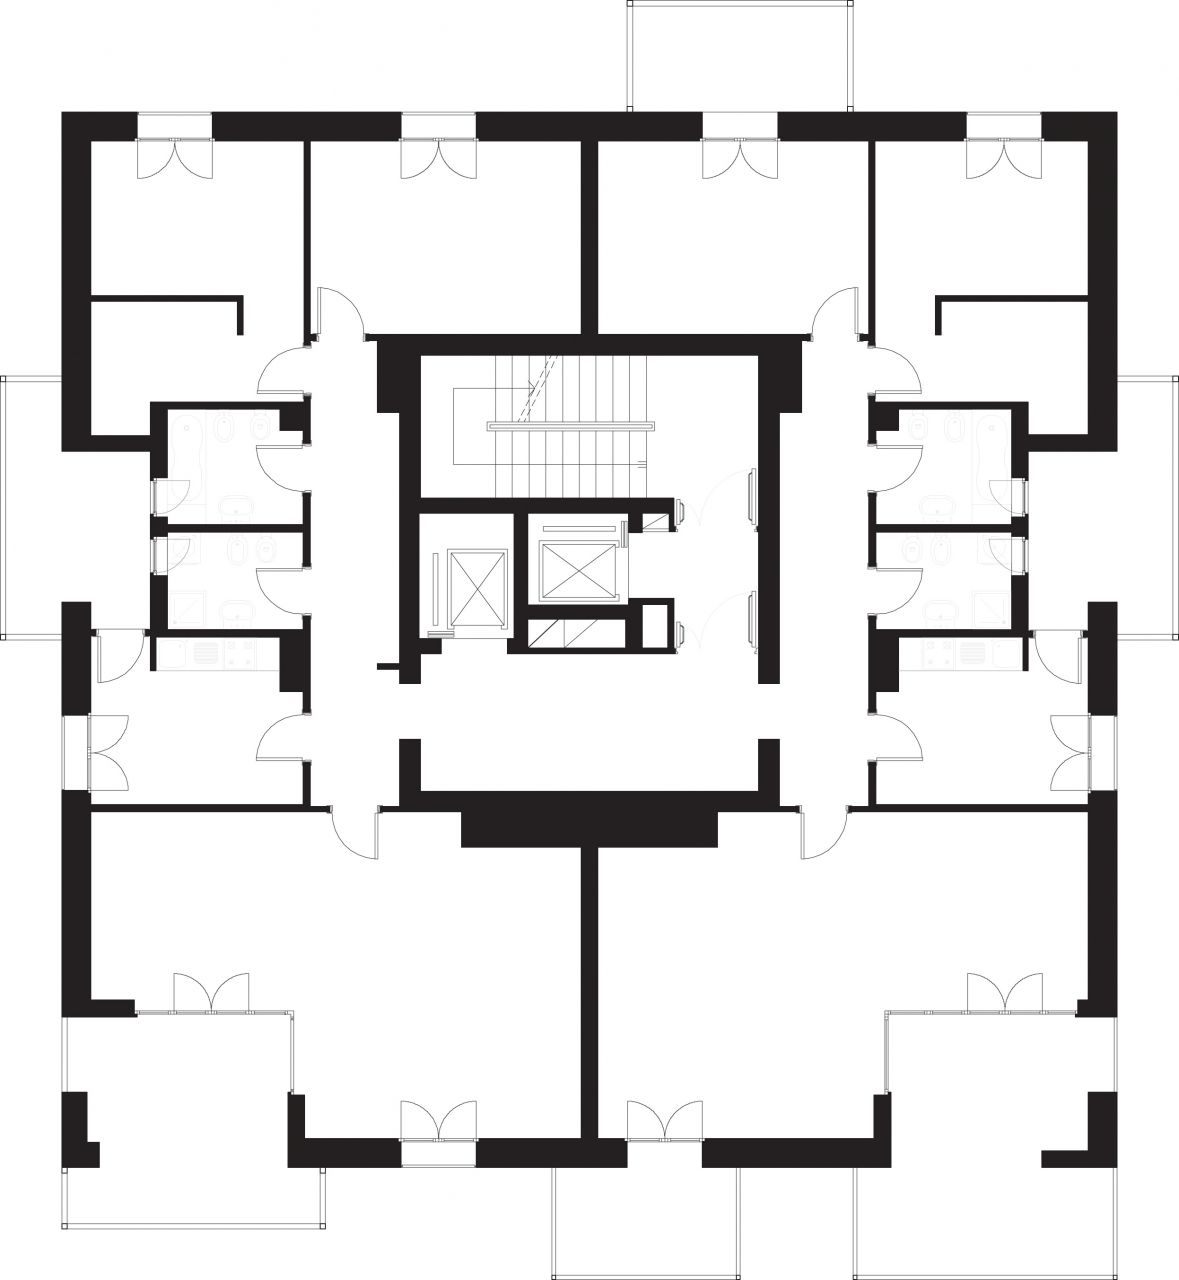 3/8 Typical floor plan